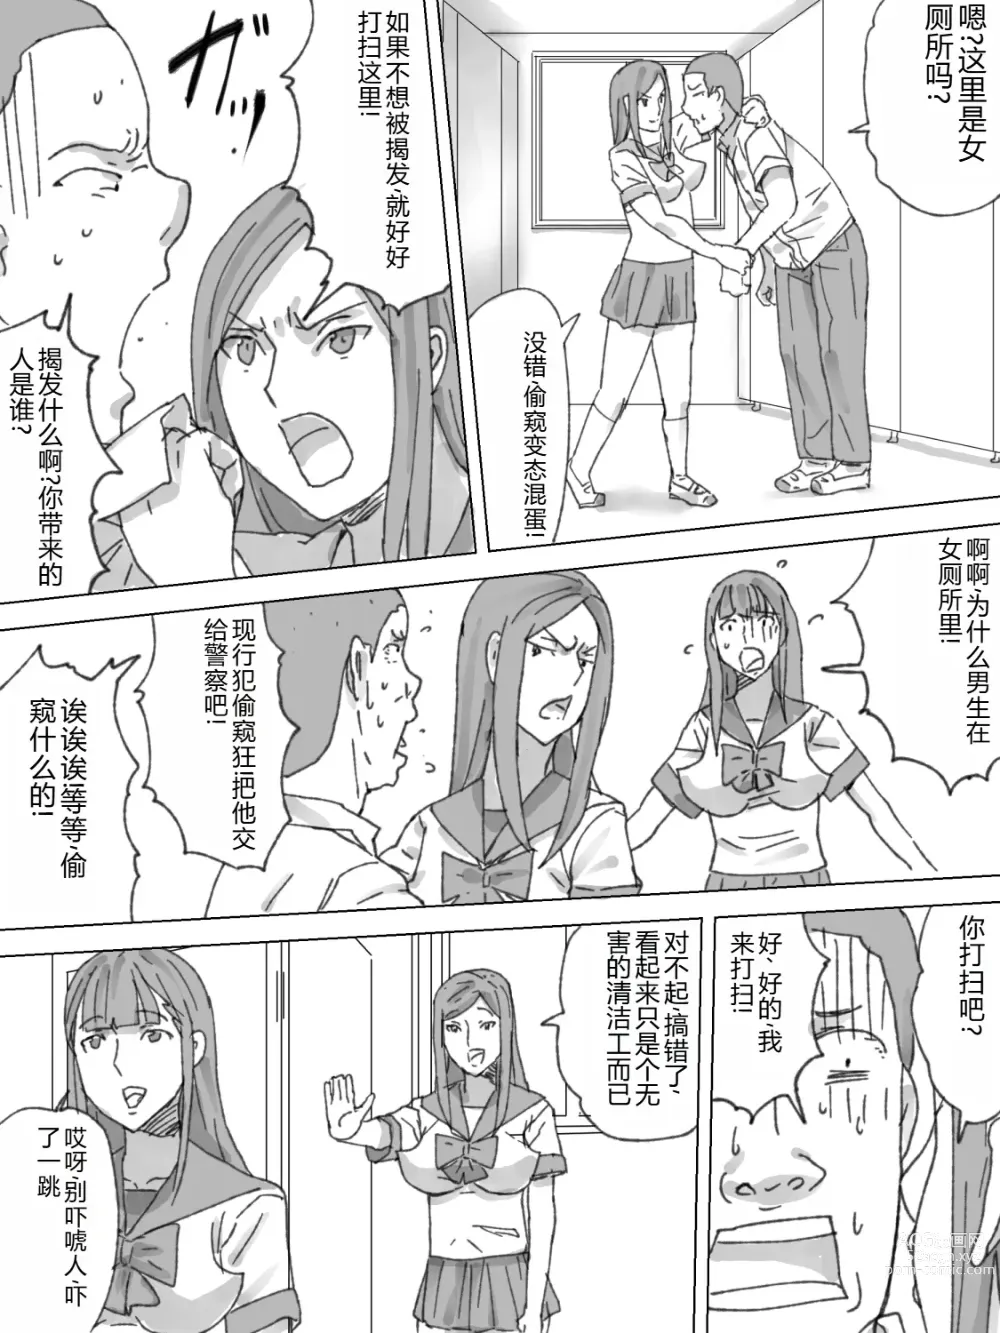 Page 6 of doujinshi Joshi Toile Souji